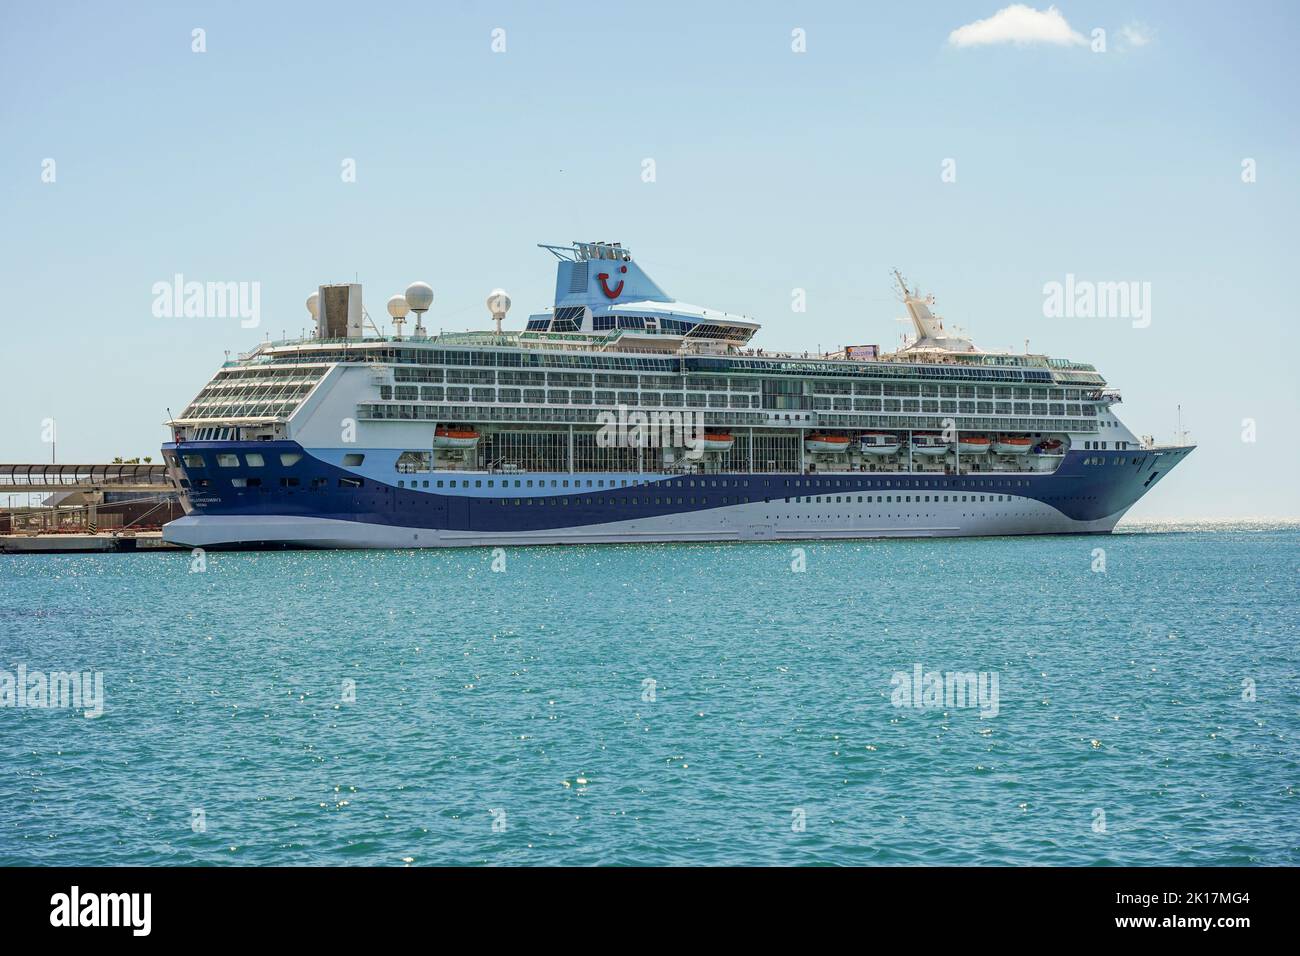 Modern cruise line, Cruise ship, TUI Marella Discovery 2 in in the port of Malaga, Costa del Sol, Spain. Stock Photo